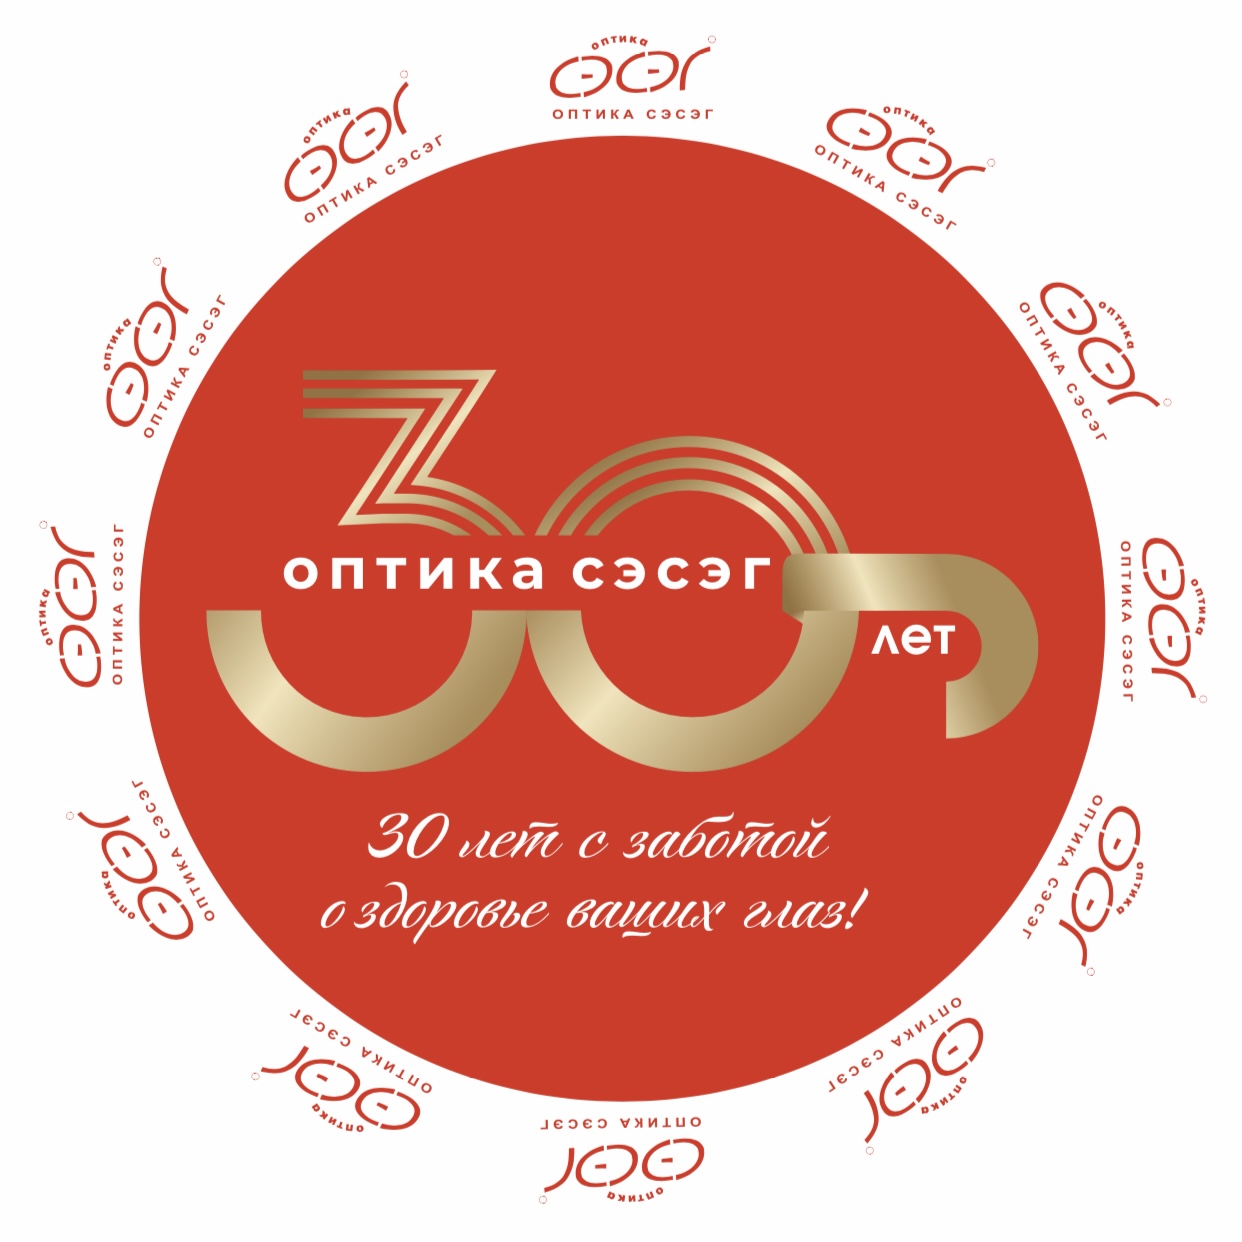 Сегодня «Оптика Сэсэг» отмечает свой 30-летний юбилей! 